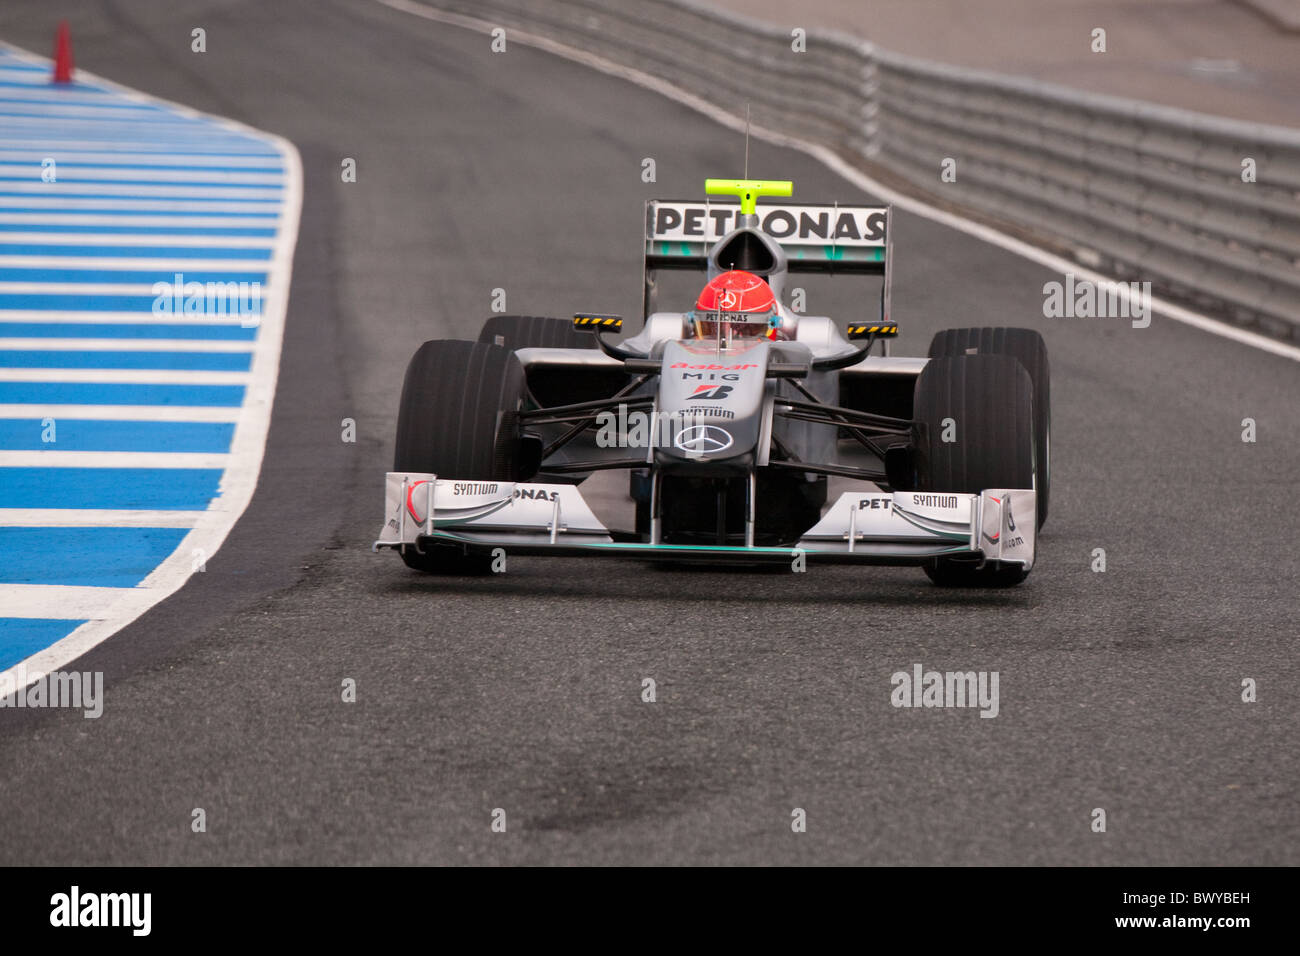 13-02-2010, Exit, formula 1, Jerez, M. Schumacher, Mercedes, Pit lane, test, wet Stock Photo